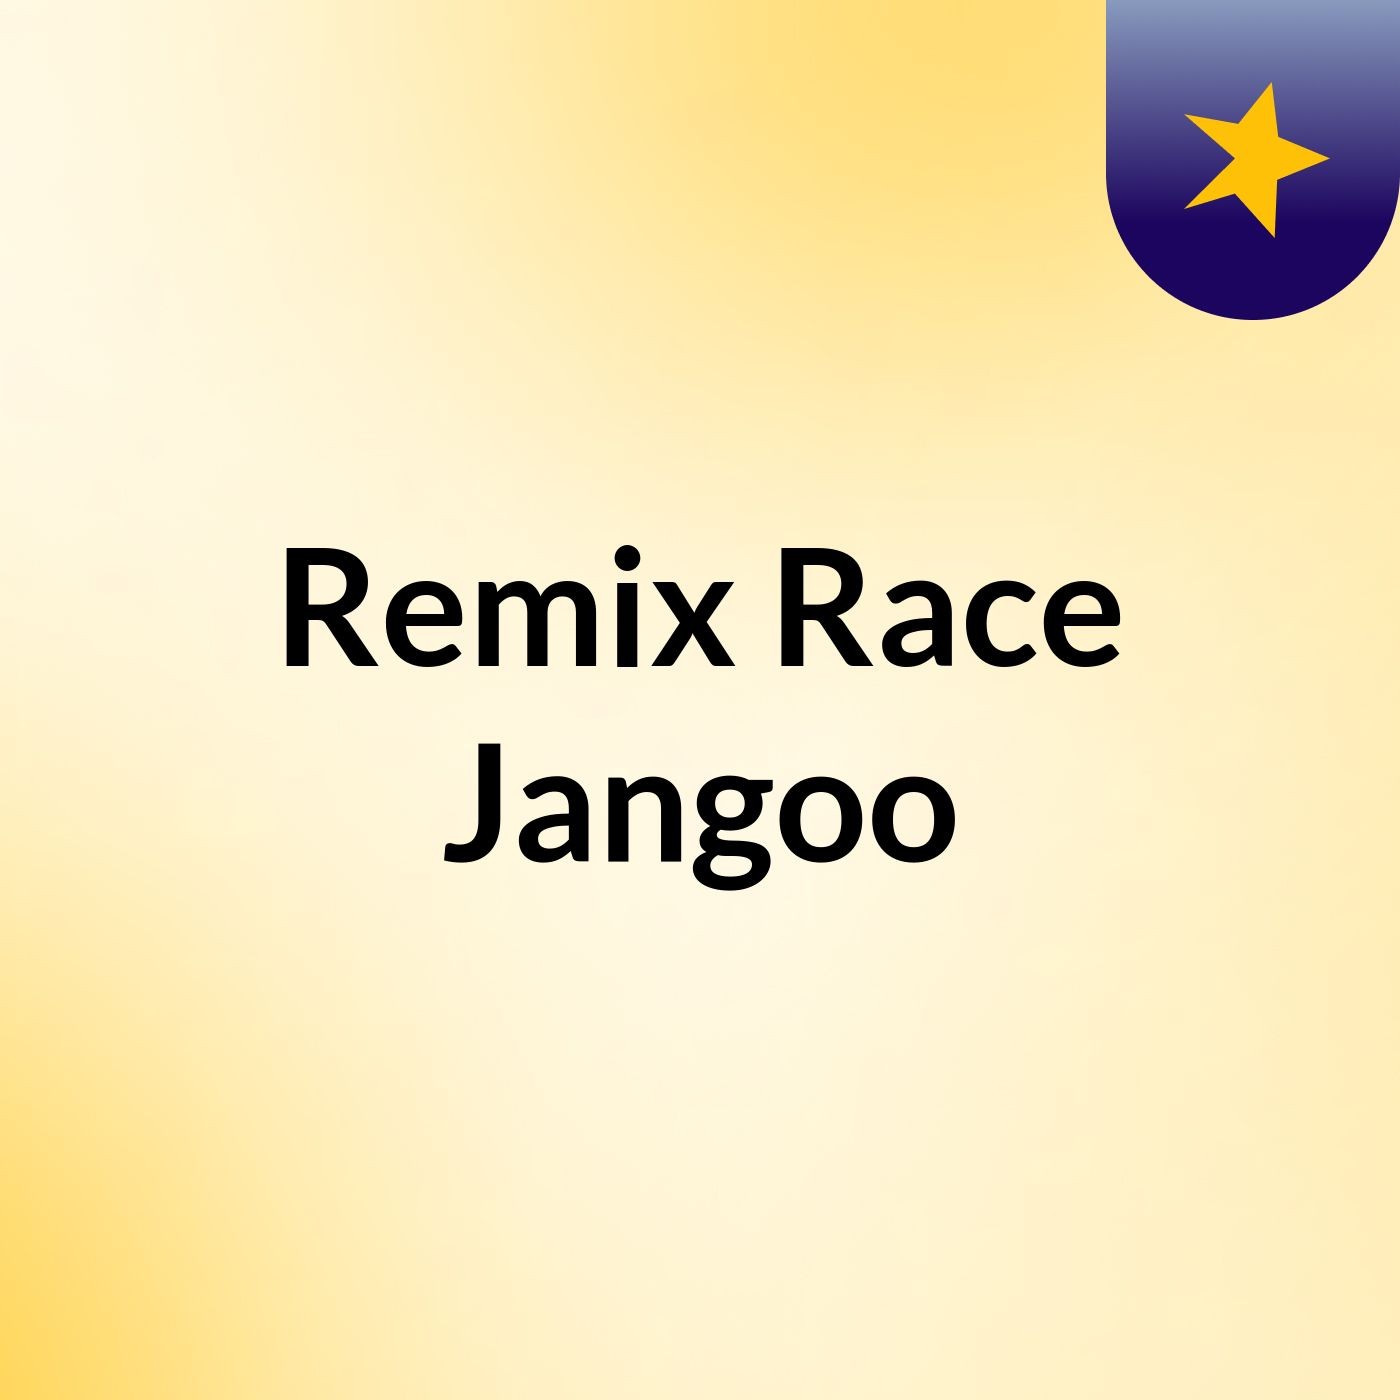 Remix Race Jangoo